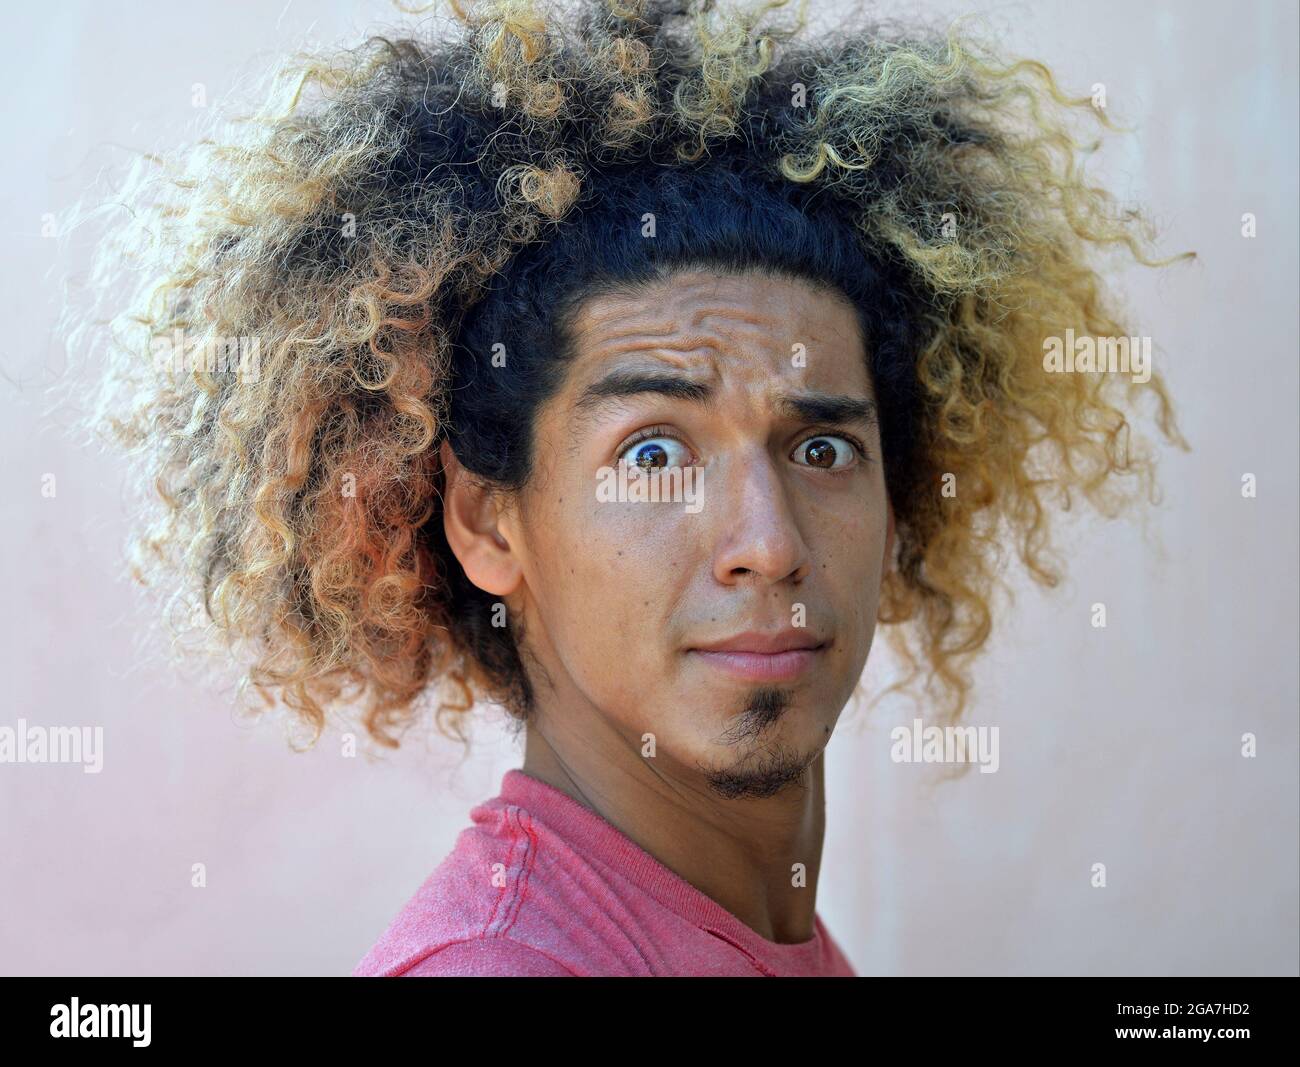 El joven latinoamericano con un choque de pelo rizado salvaje y extremos de pelo teñido rubio mira sorprendido con ojos grandes y frente arrugado en la cámara. Foto de stock